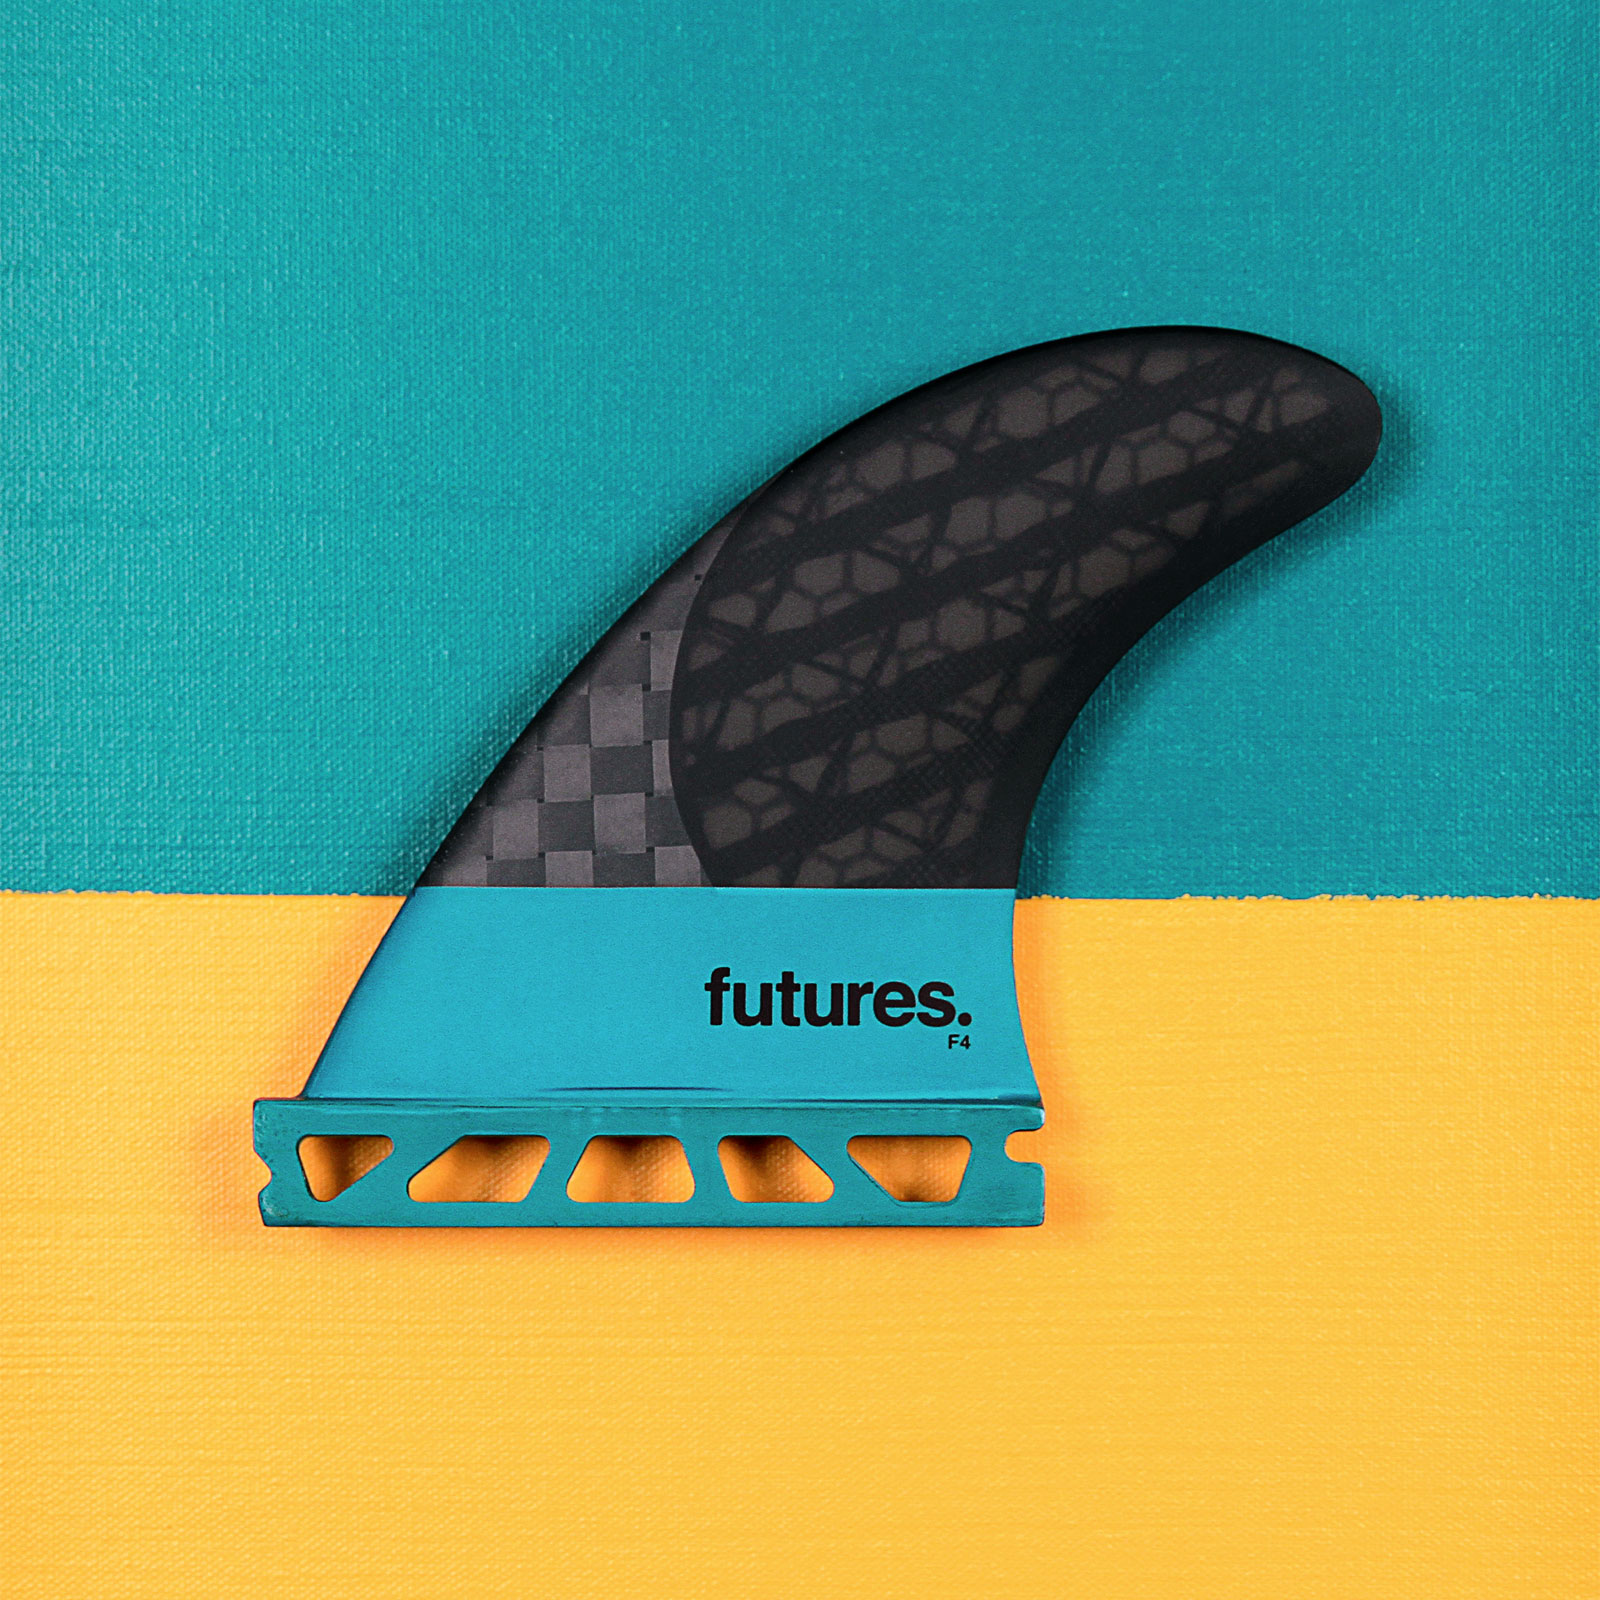 futures F4 ブラックス ティックスカタログ【フィン王】